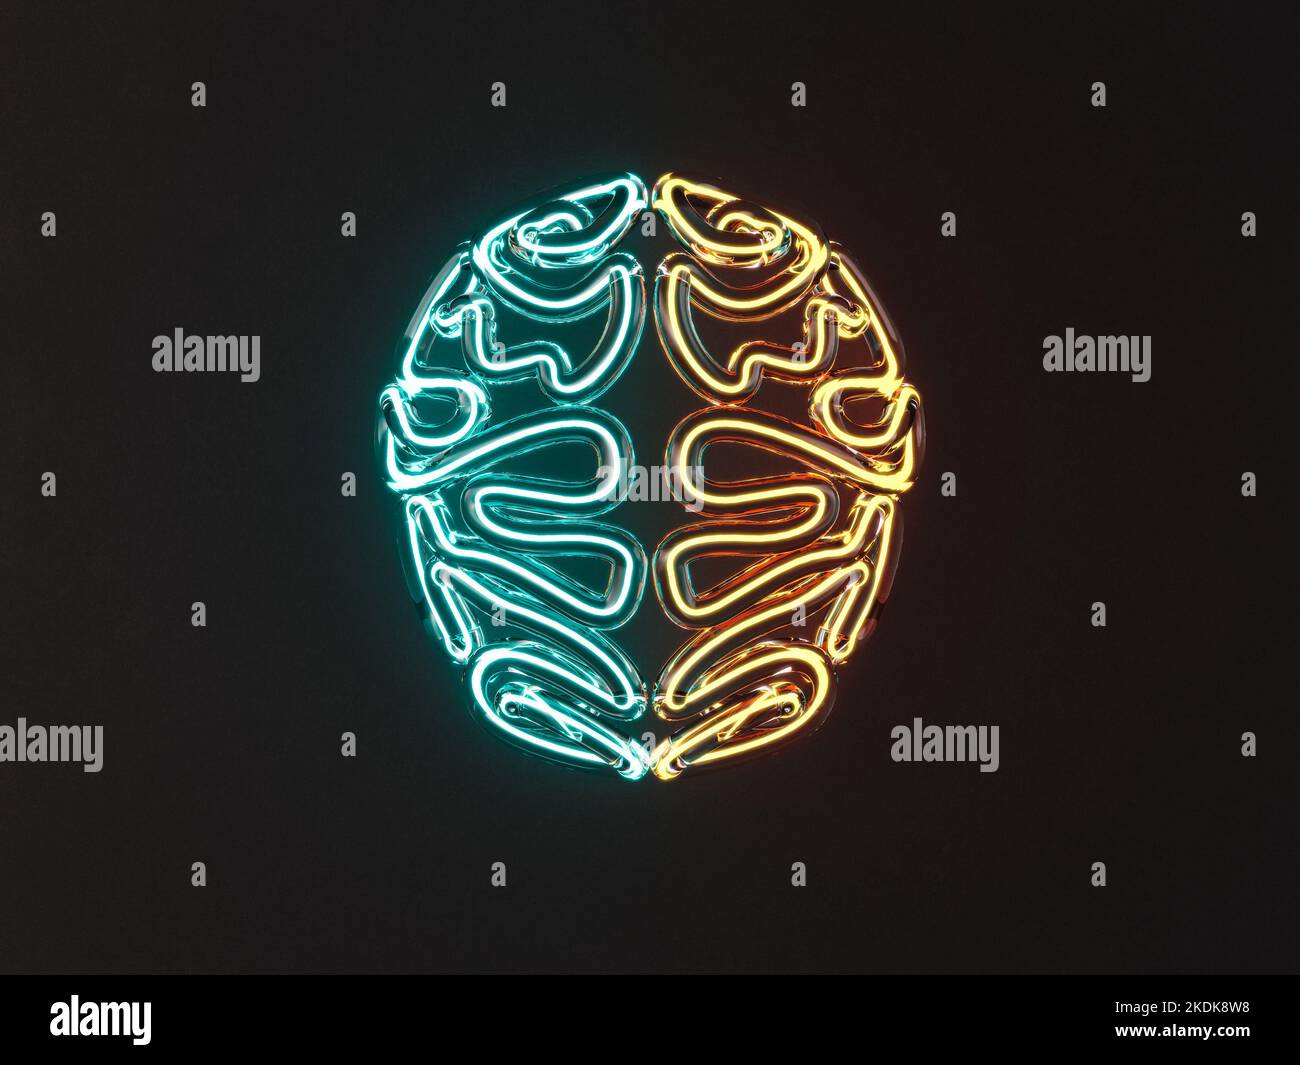 Ein Glas stilisiertes Gehirn, das von verschiedenen Neon-Leuchtstoffröhren auf einem isolierten dunklen Hintergrund beleuchtet wird - 3D Render Stockfoto